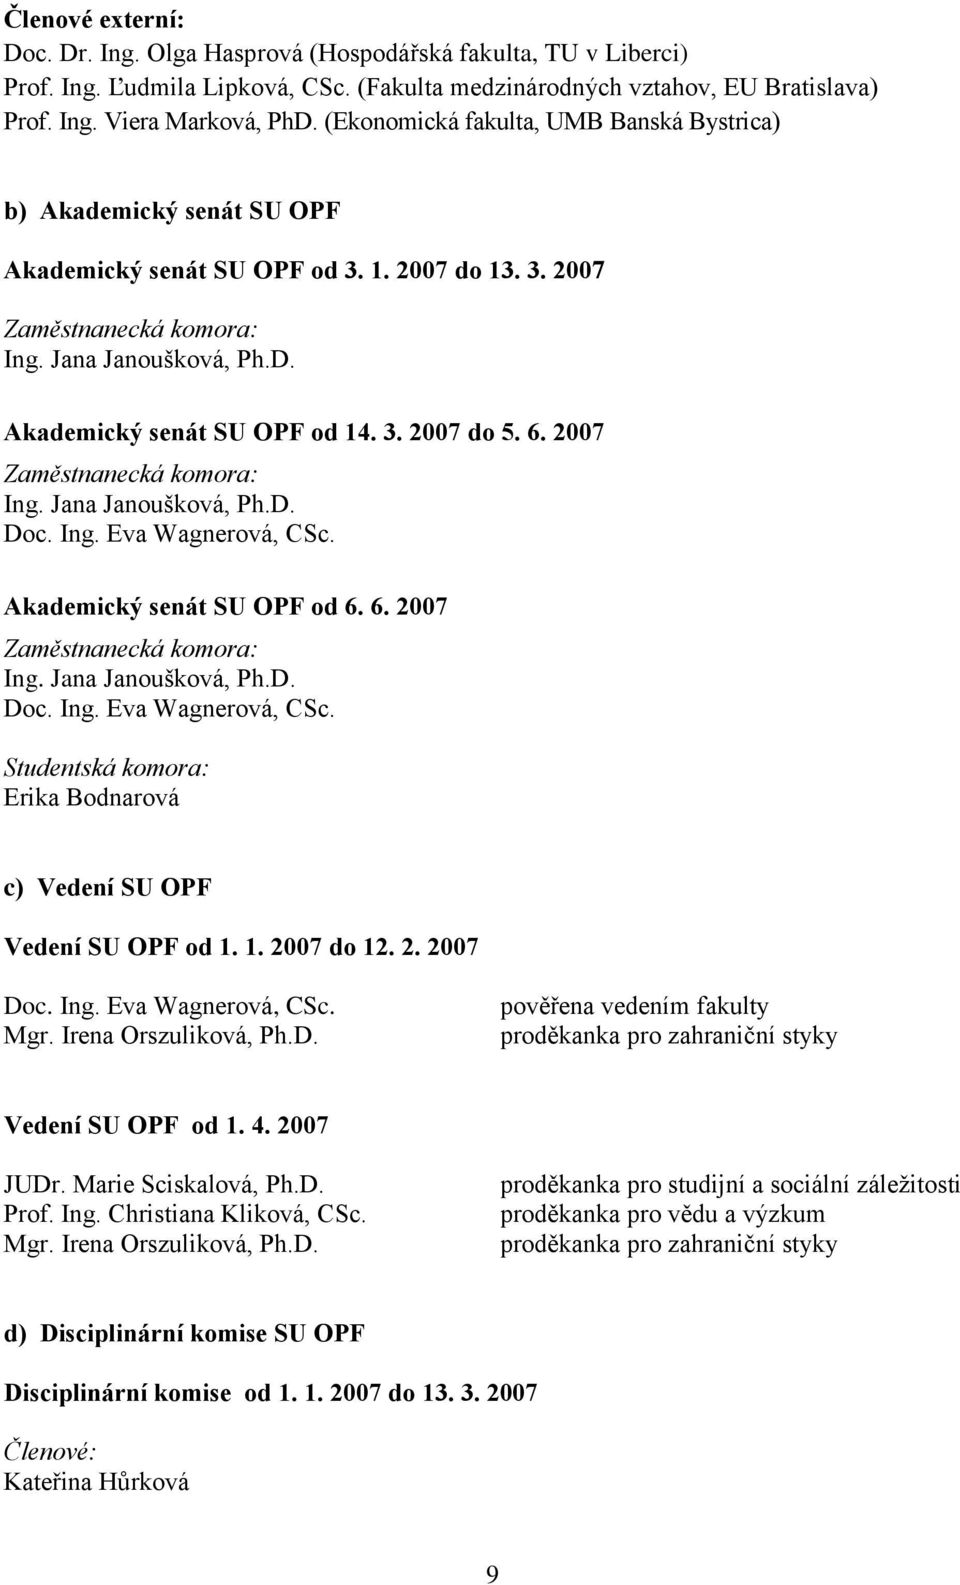 Akademický senát SU OPF od 14. 3. 2007 do 5. 6. 2007 Zaměstnanecká komora: Ing. Jana Janoušková, Ph.D. Doc. Ing. Eva Wagnerová, CSc.